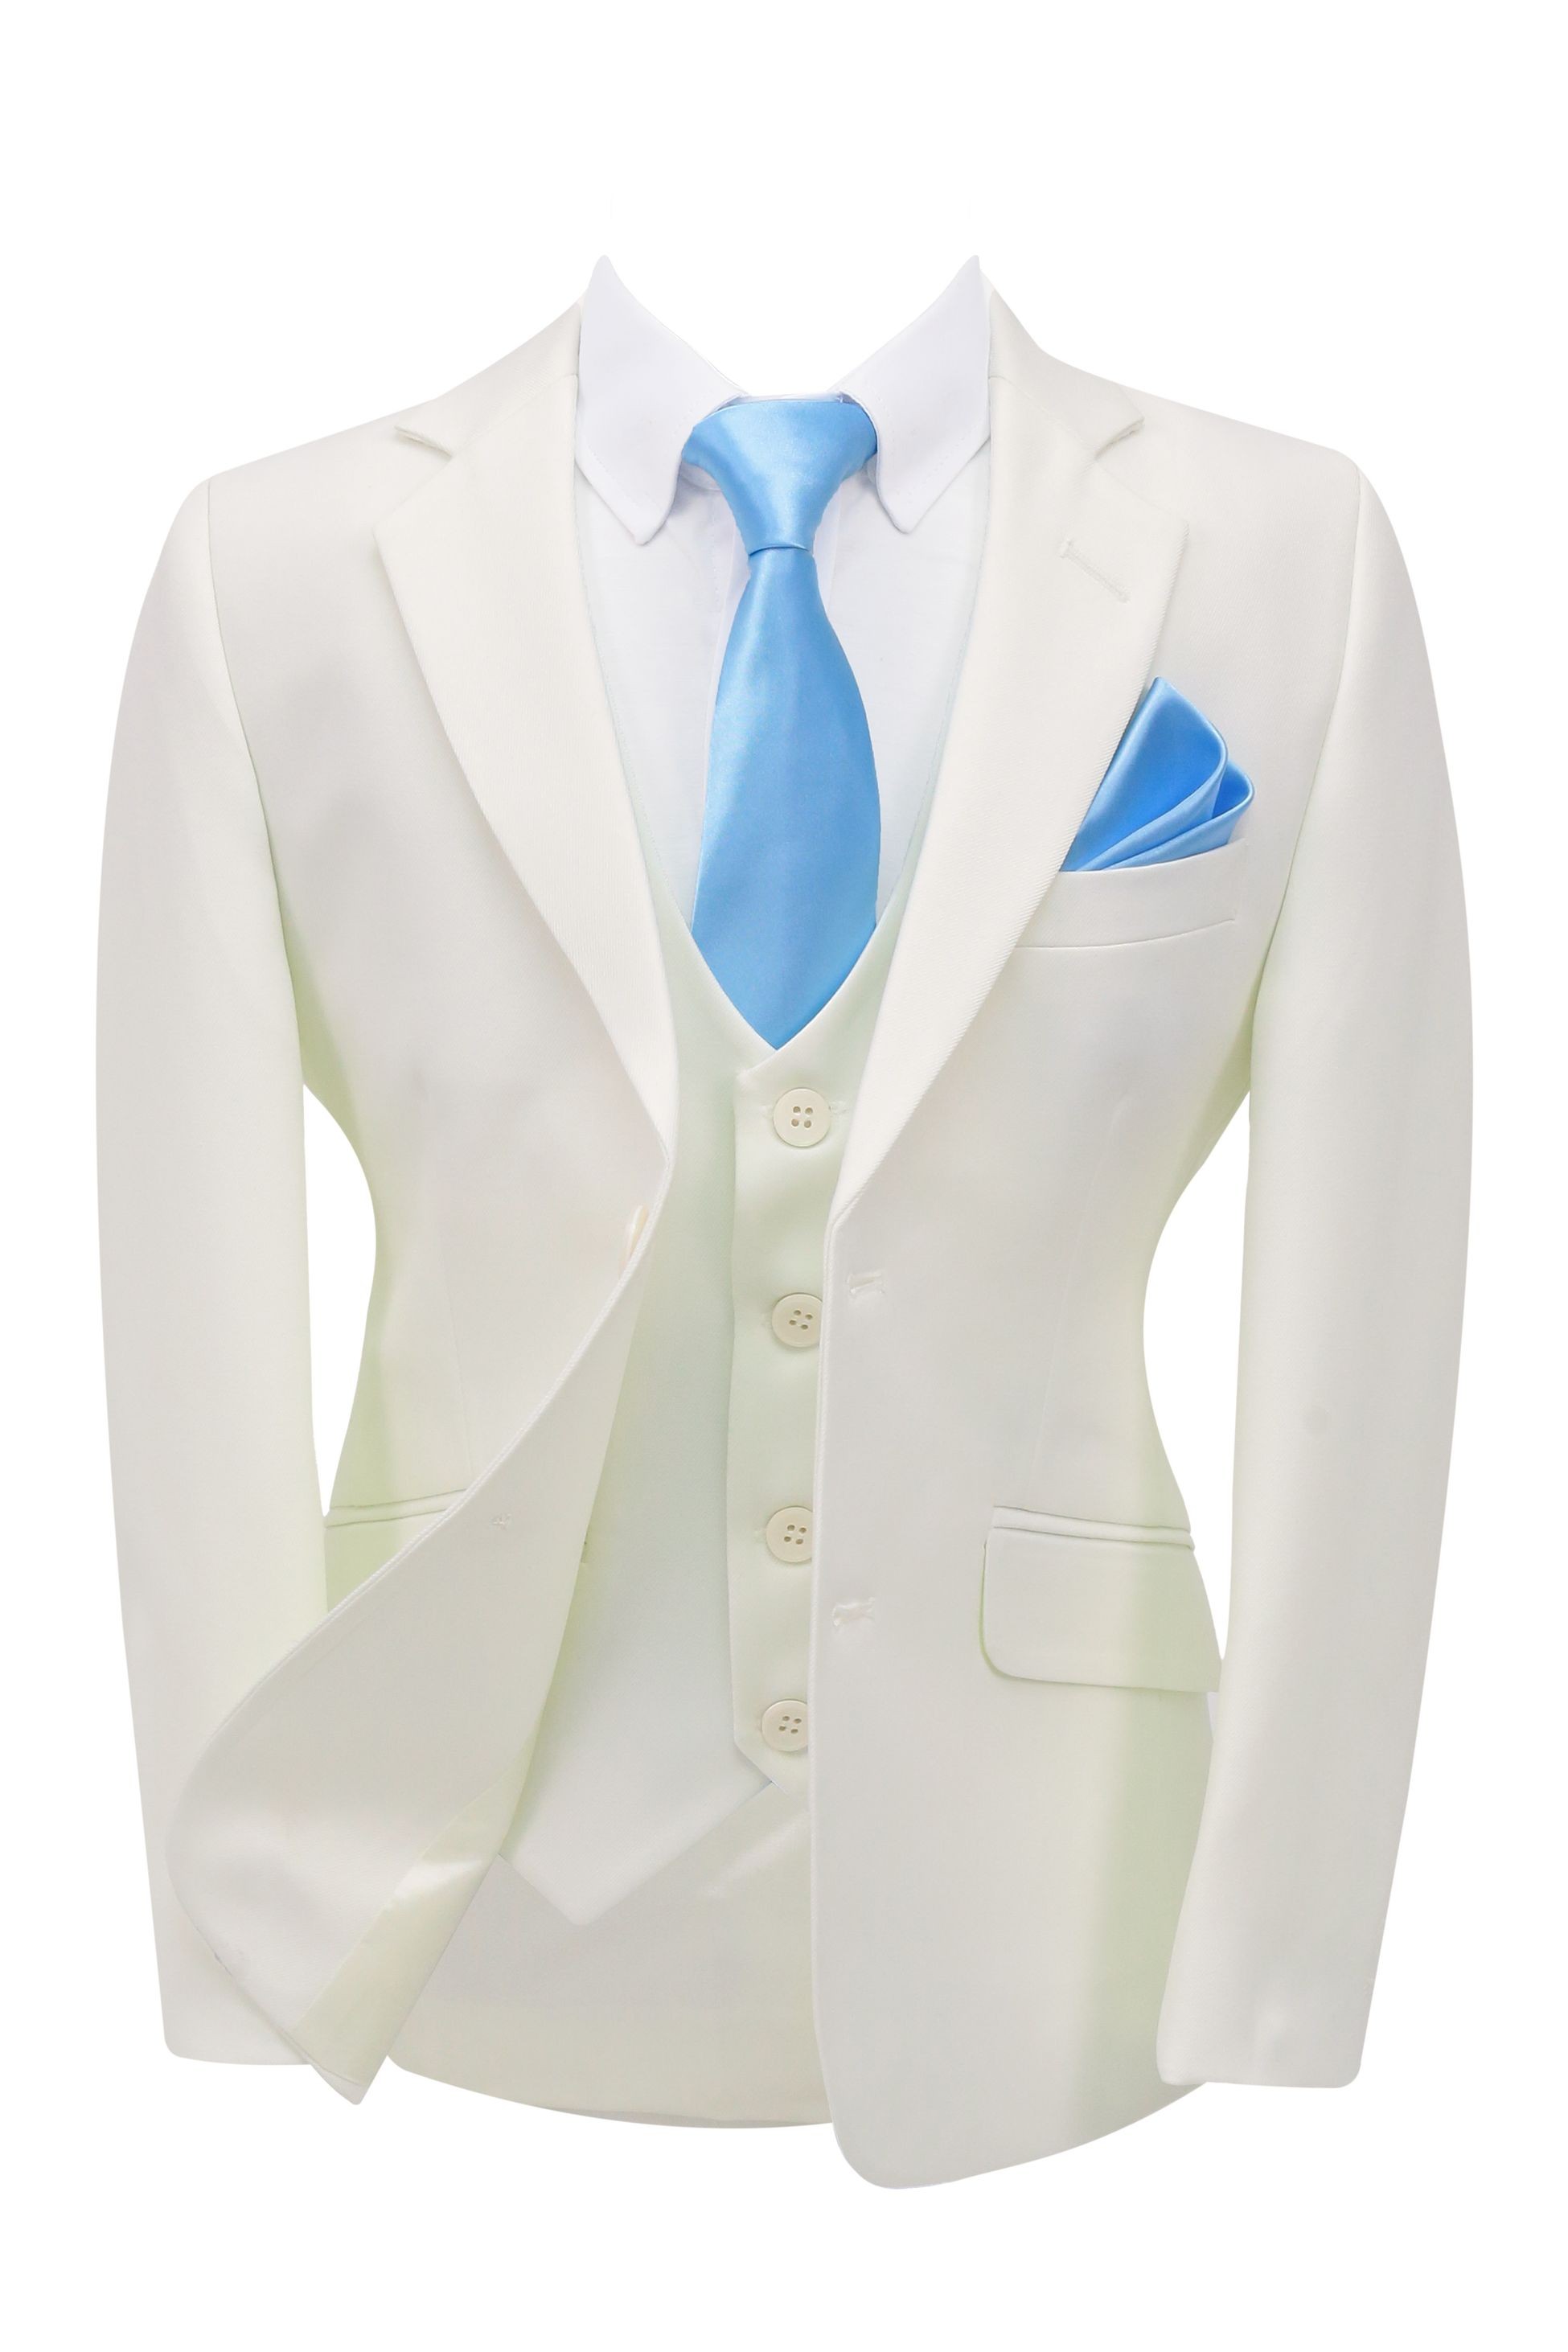 Anzug für Jungen im Pageboy Stil - Weiß